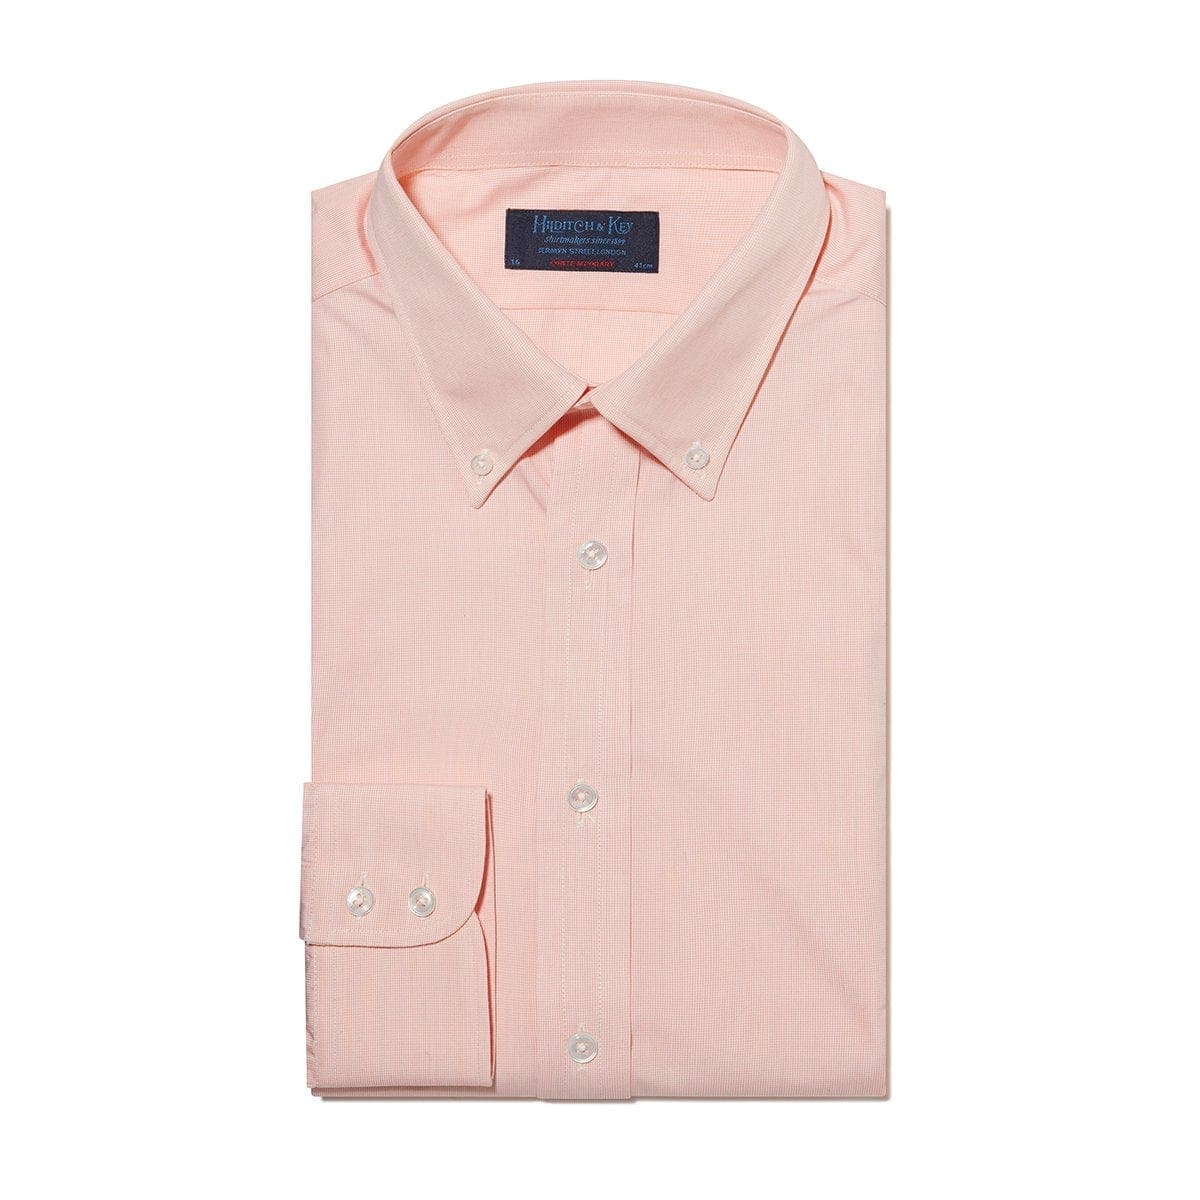 Contemporary Fit, Button Down Collar, 2 Button Cuff Shirt In Orange Micro Weave